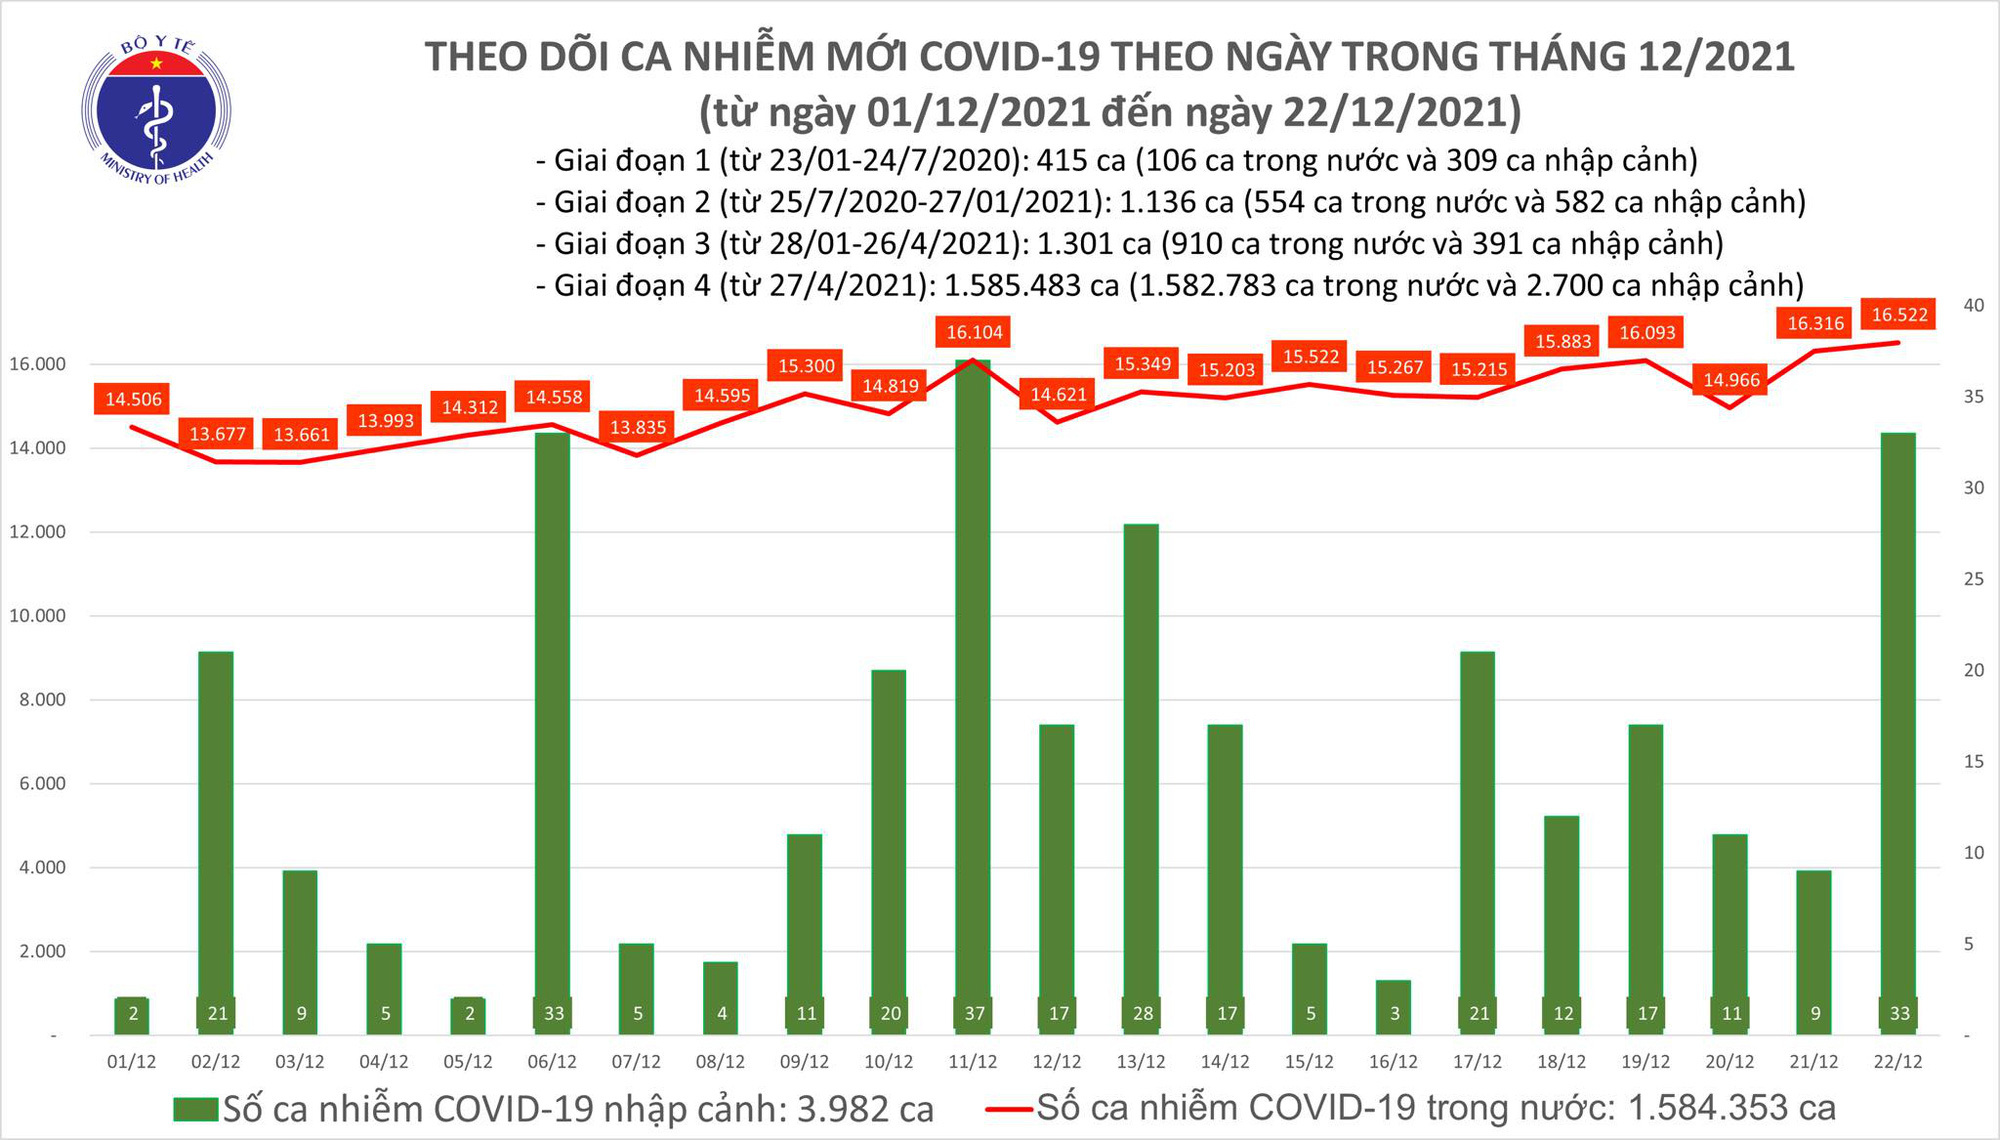 Ngày 22/12: Có 16.555 ca COVID-19, Hà Nội 4 ngày liên tục có số mắc nhiều nhất cả nước